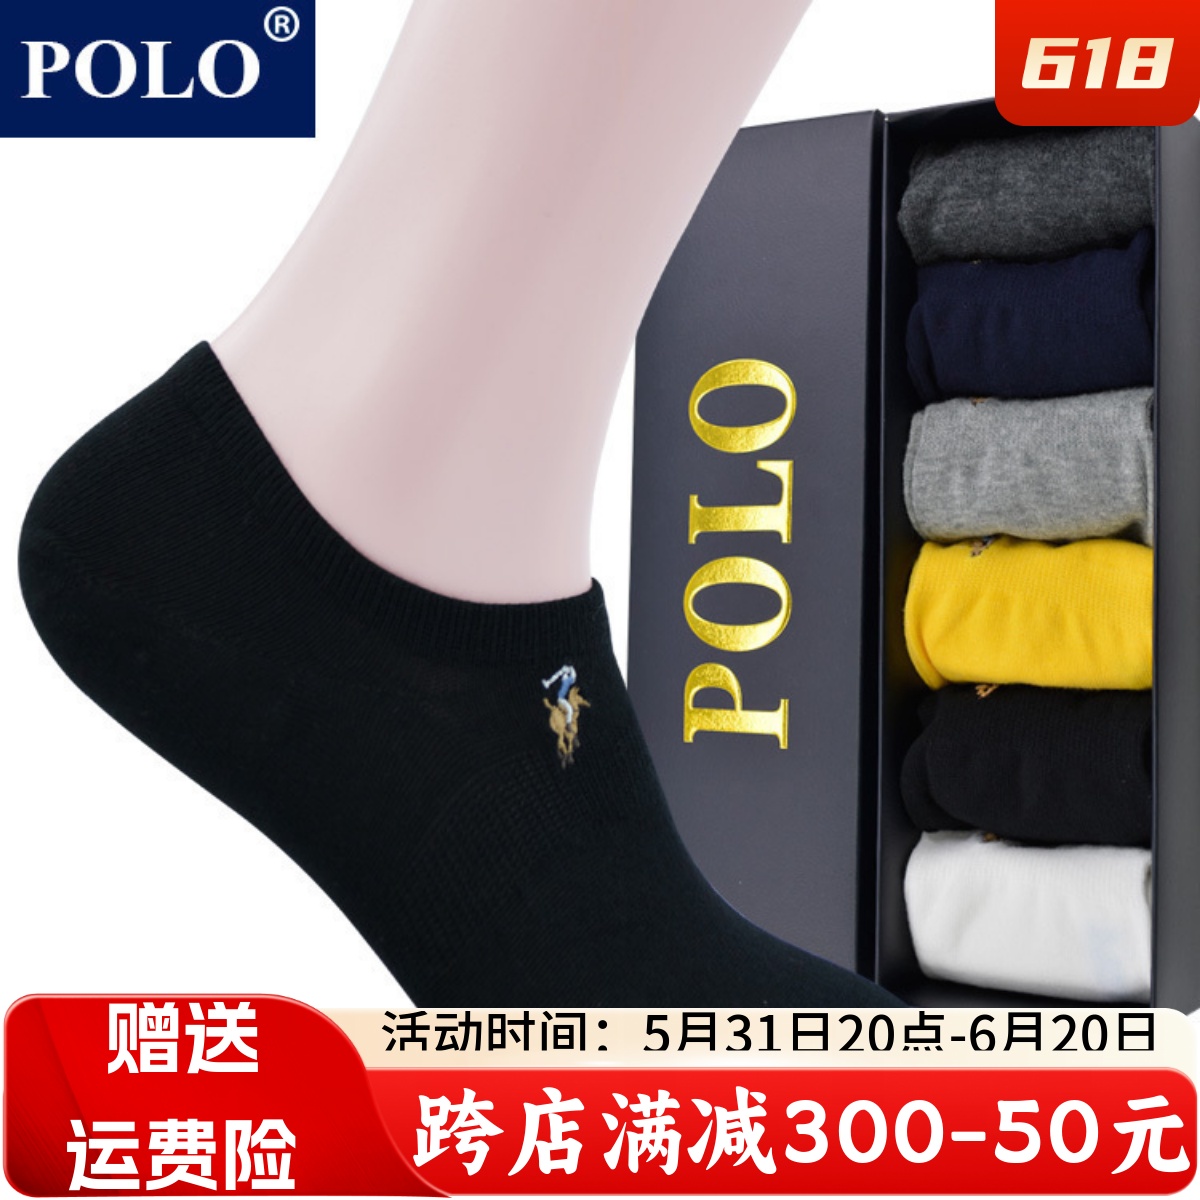 POLO新品纯棉短袜男士棉袜低帮夏季薄款浅口男船袜防臭吸汗船型袜